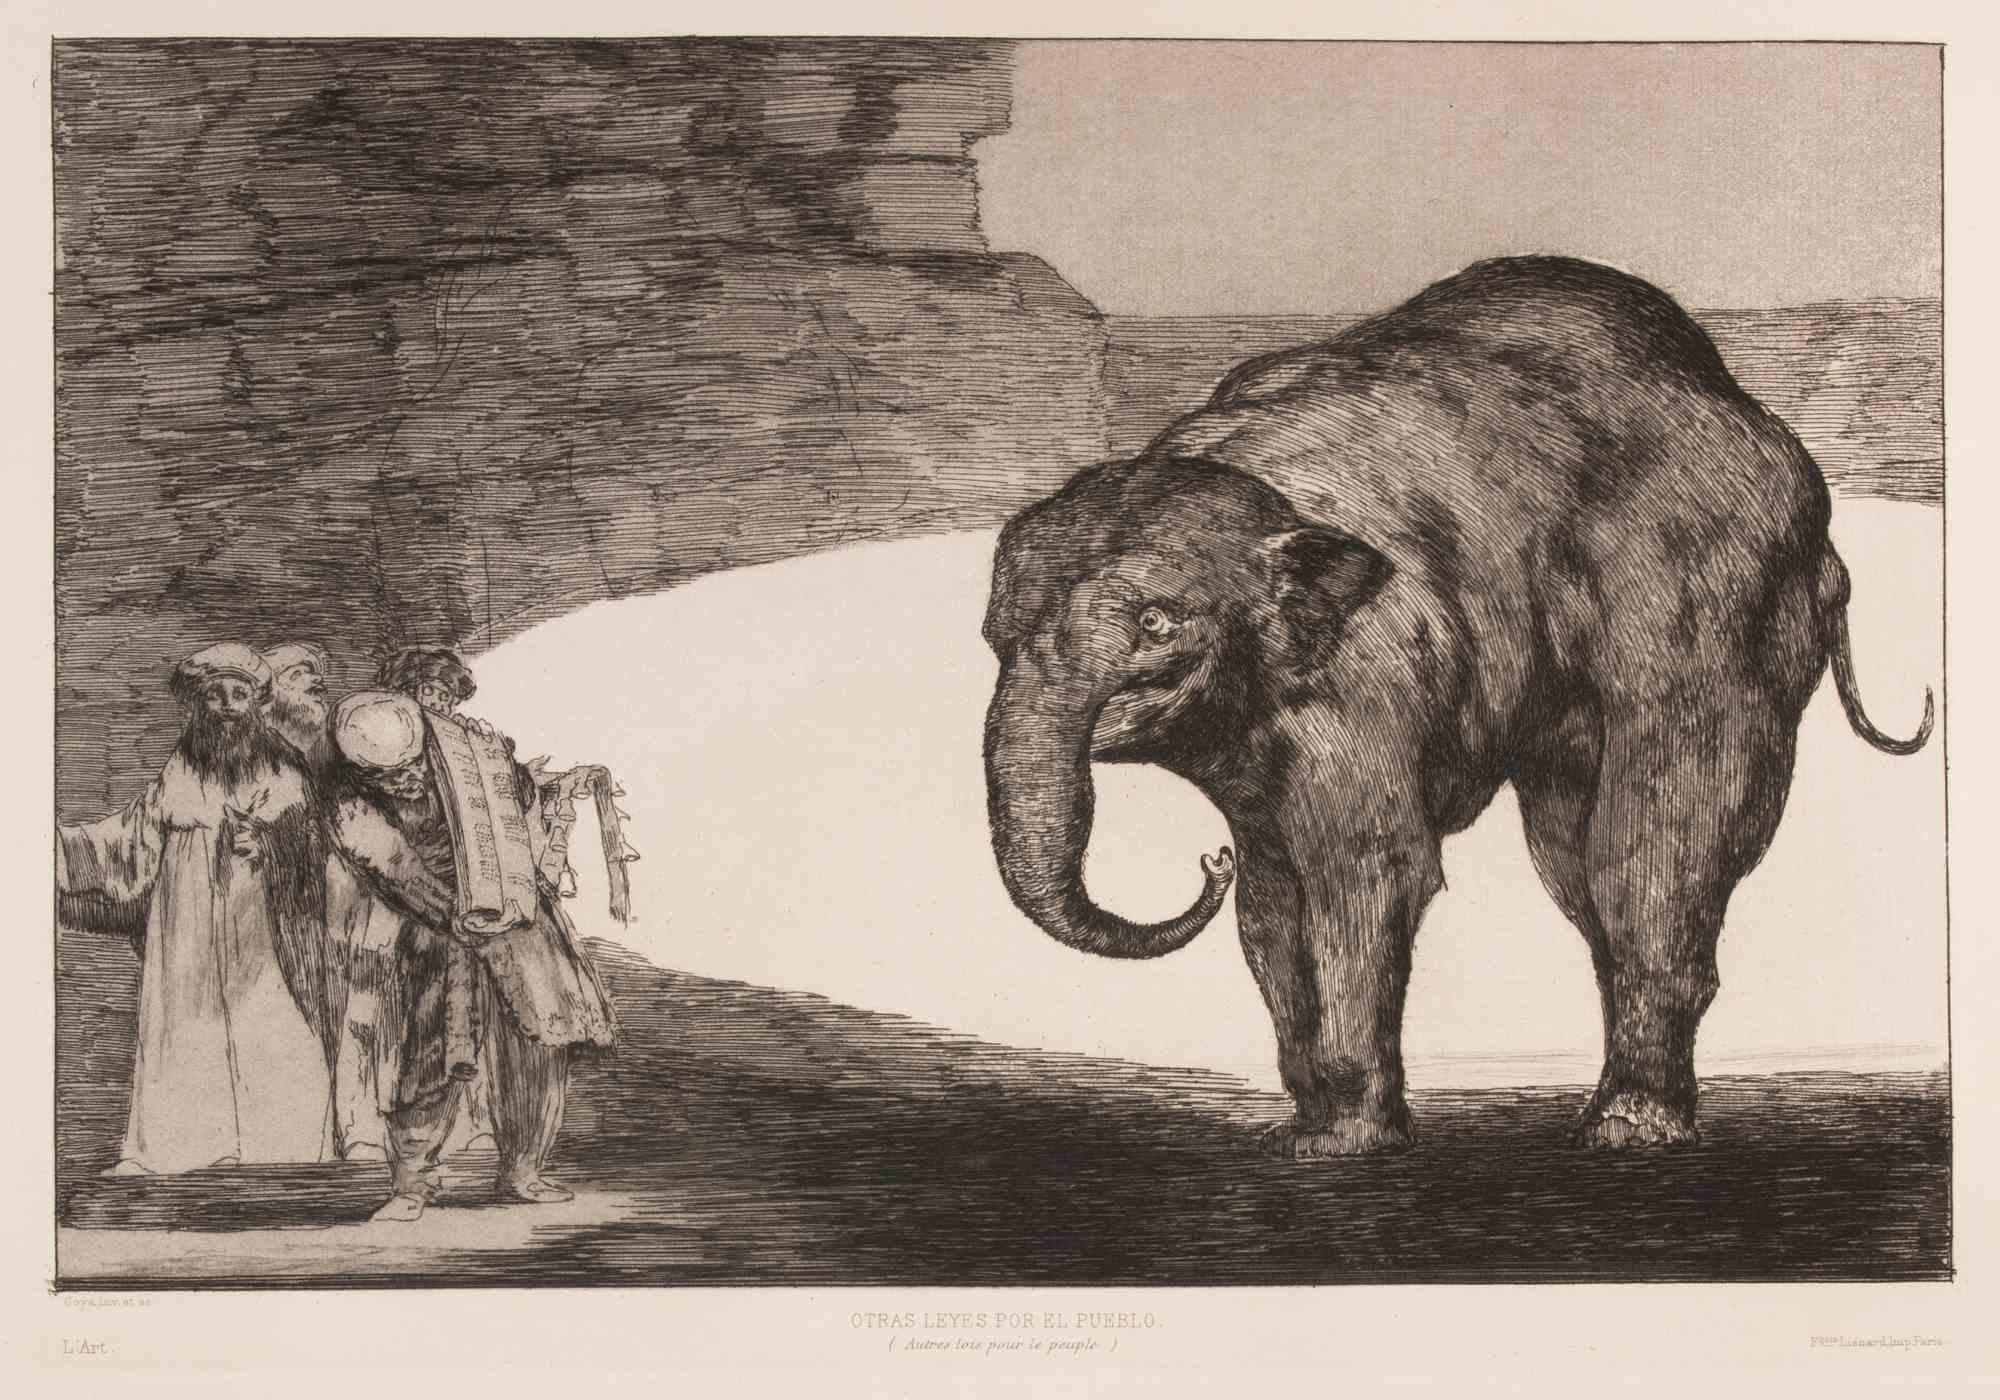 Otras Leyes por el Pueblo - Eau-forte et aquatinte de Francisco Goya - 1877 en vente 1